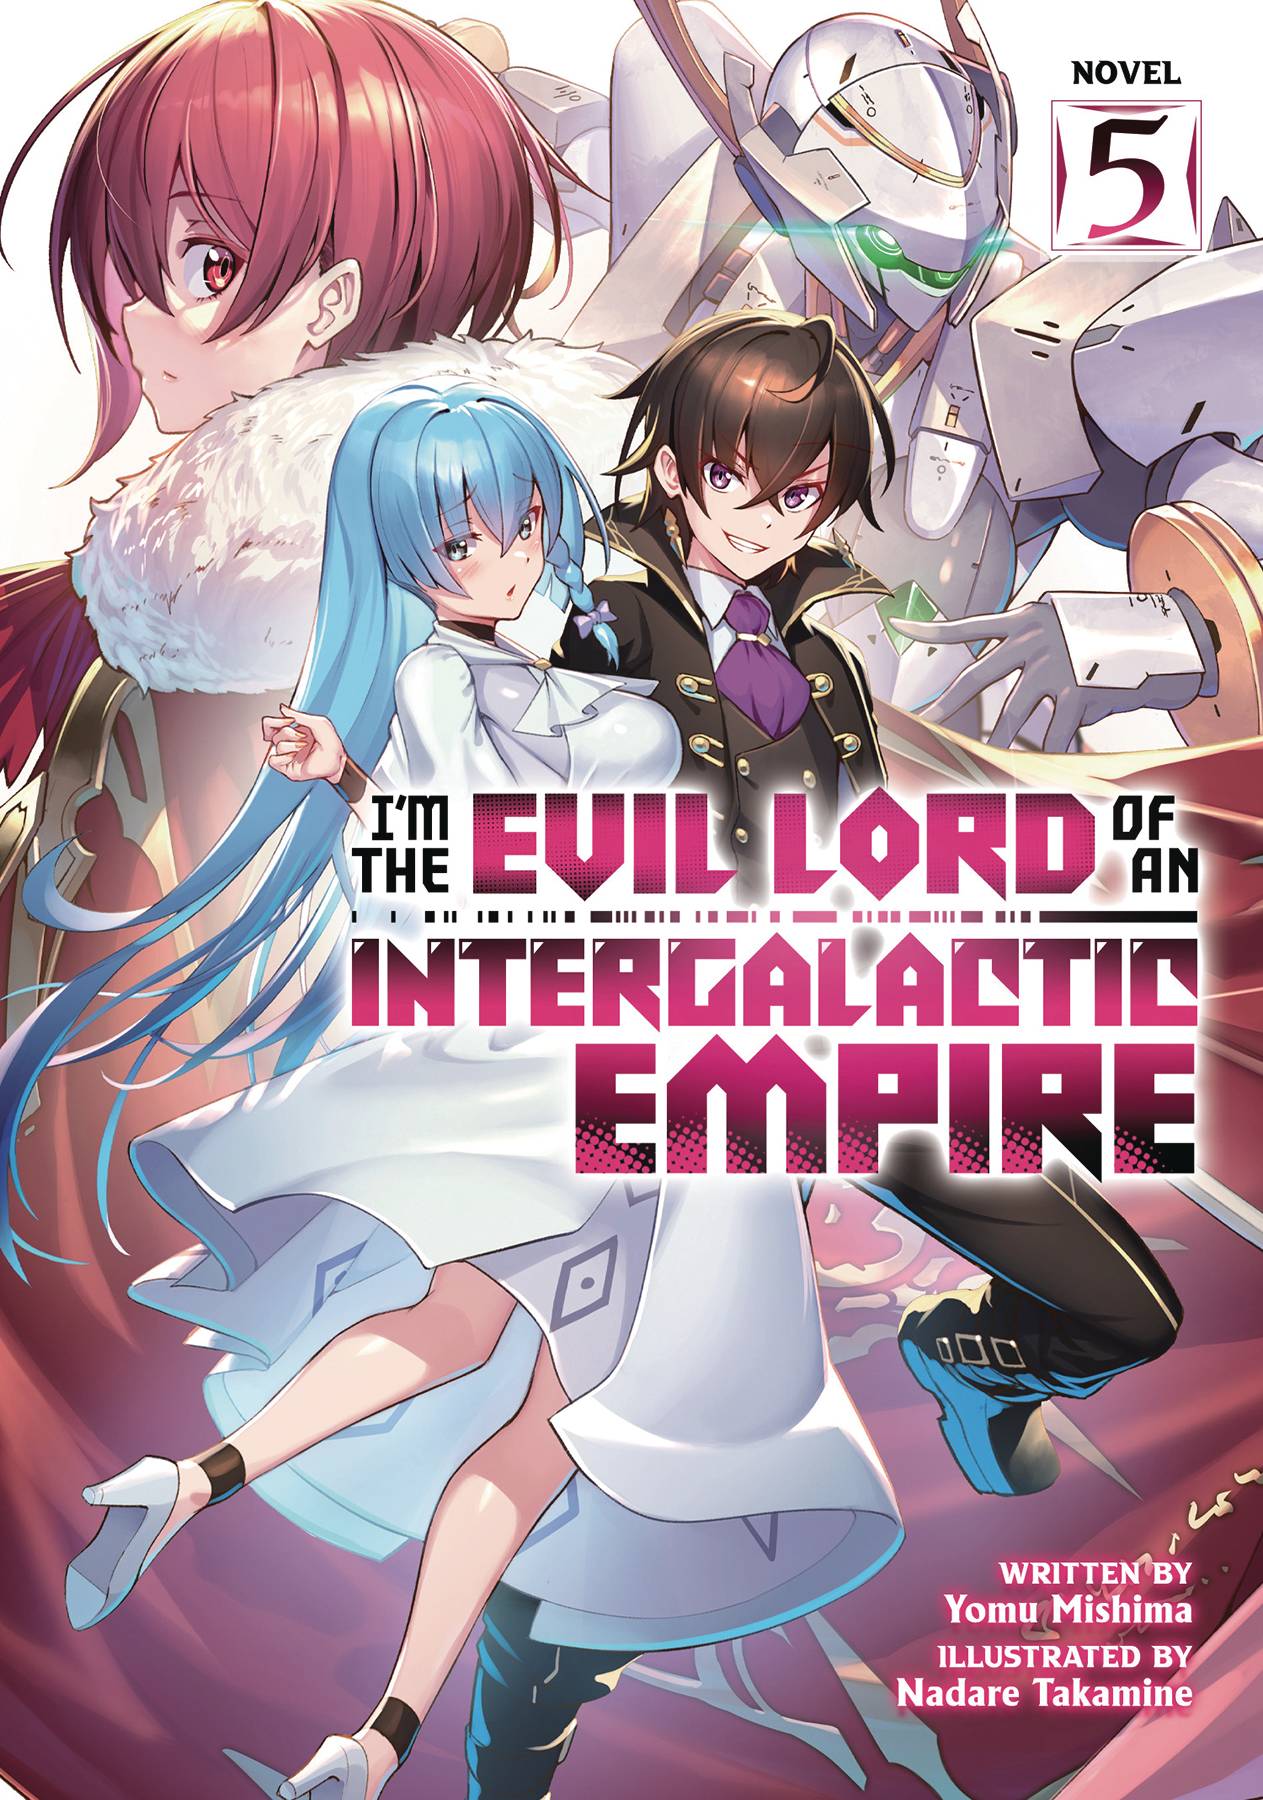 Evil Lord Intergalactic Empire L Novel Vol 05